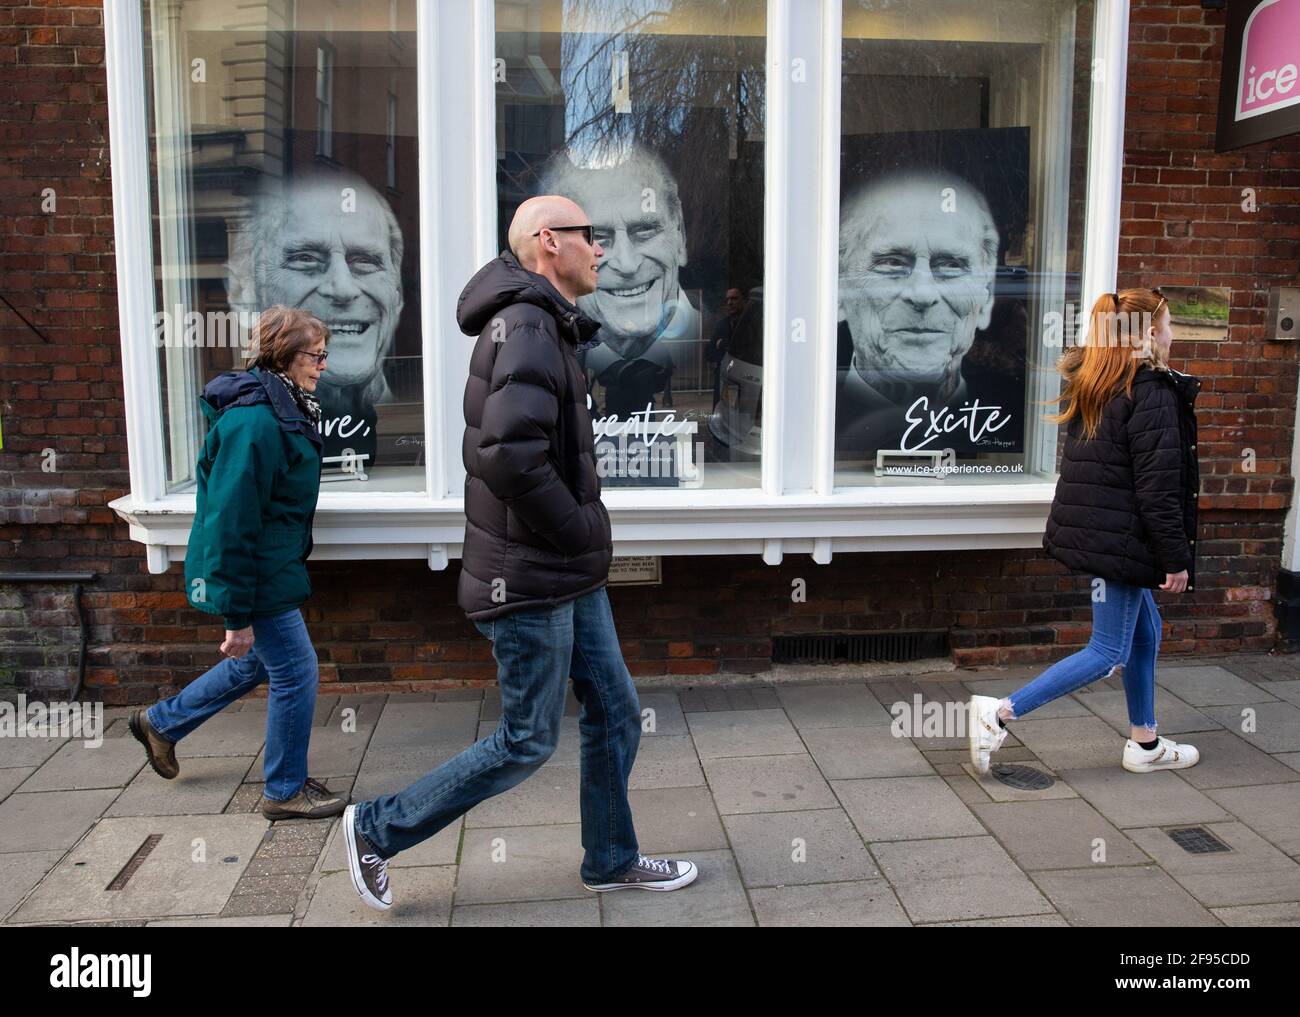 Miembros del público caminan por una exhibición de fotografías con el rostro del Príncipe Felipe. Murió el 9th de abril. Su funeral tuvo lugar el 17th de abril. Foto de stock